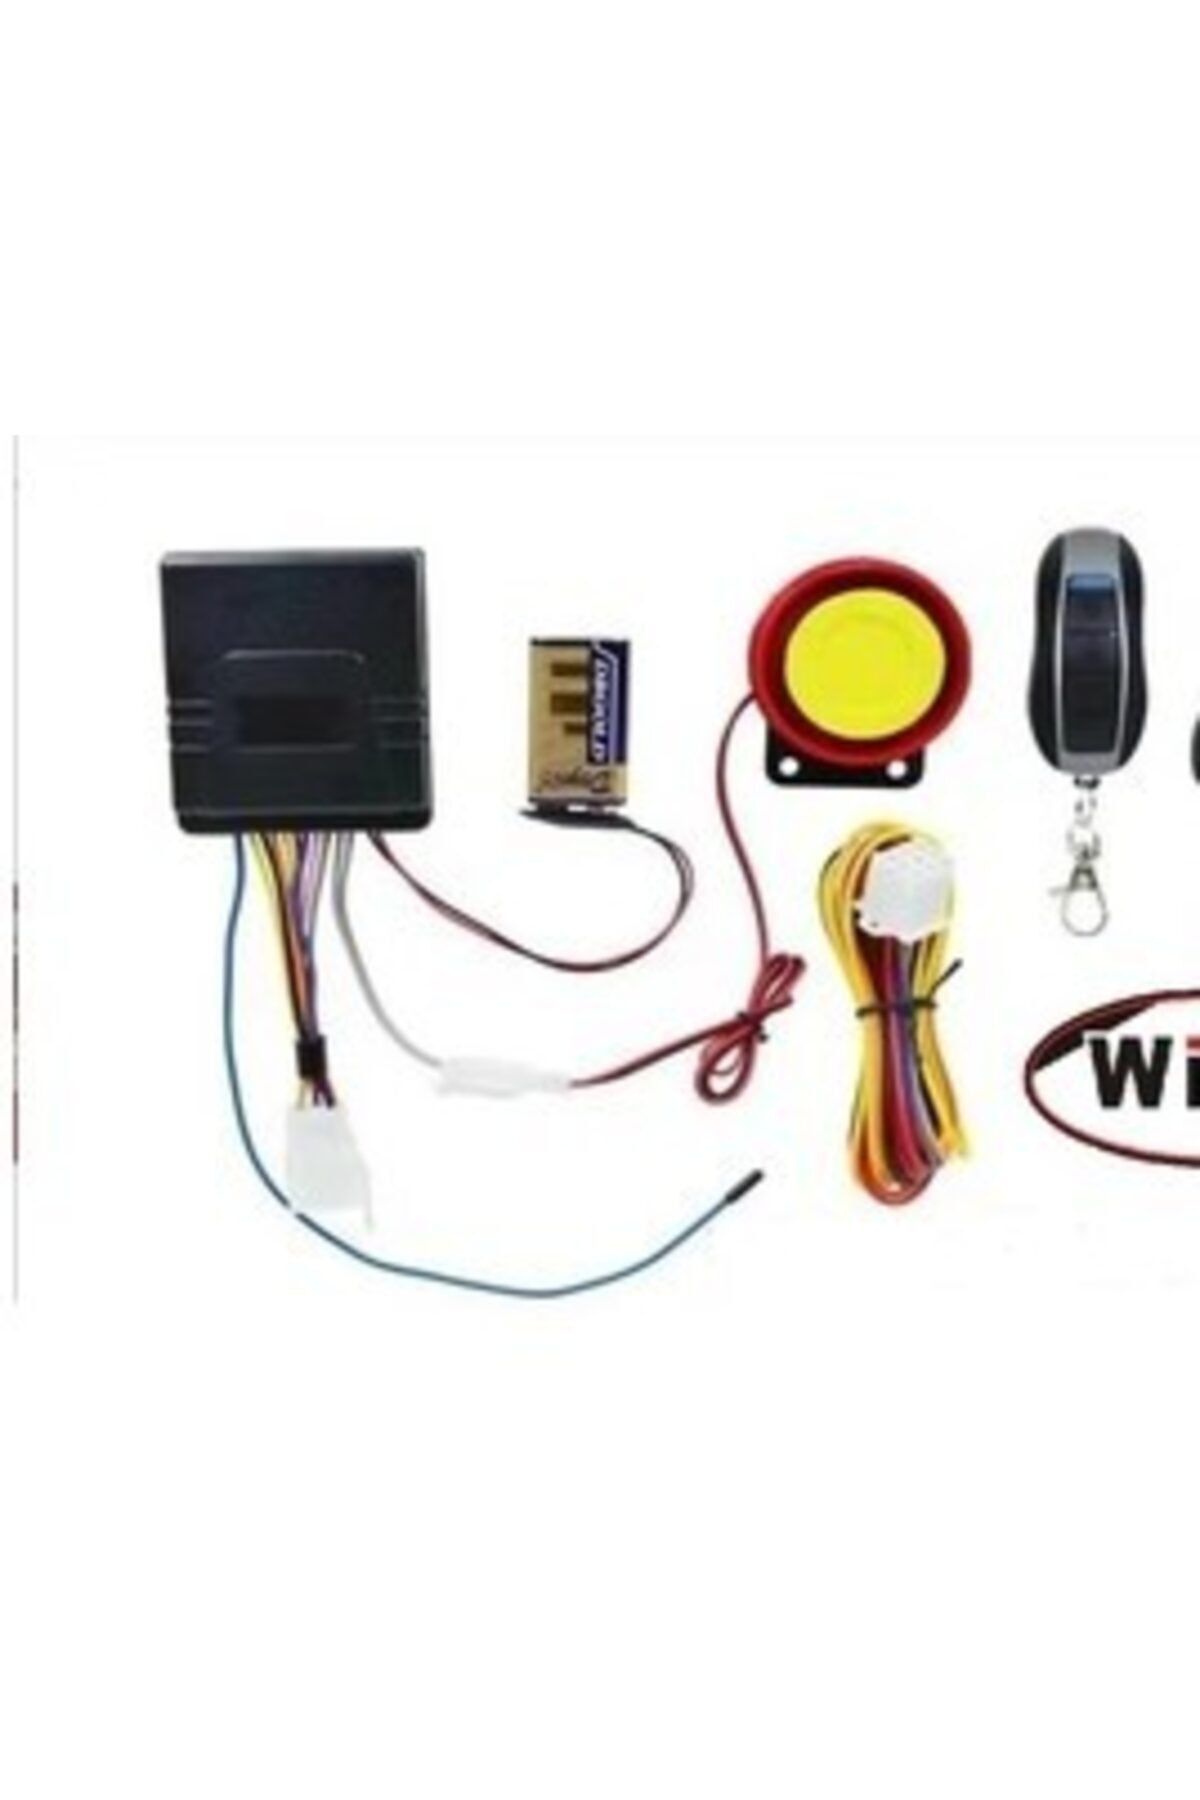 wiwi Motorsıklet Alarm + Uzaktan Çalıştırma Özelliği